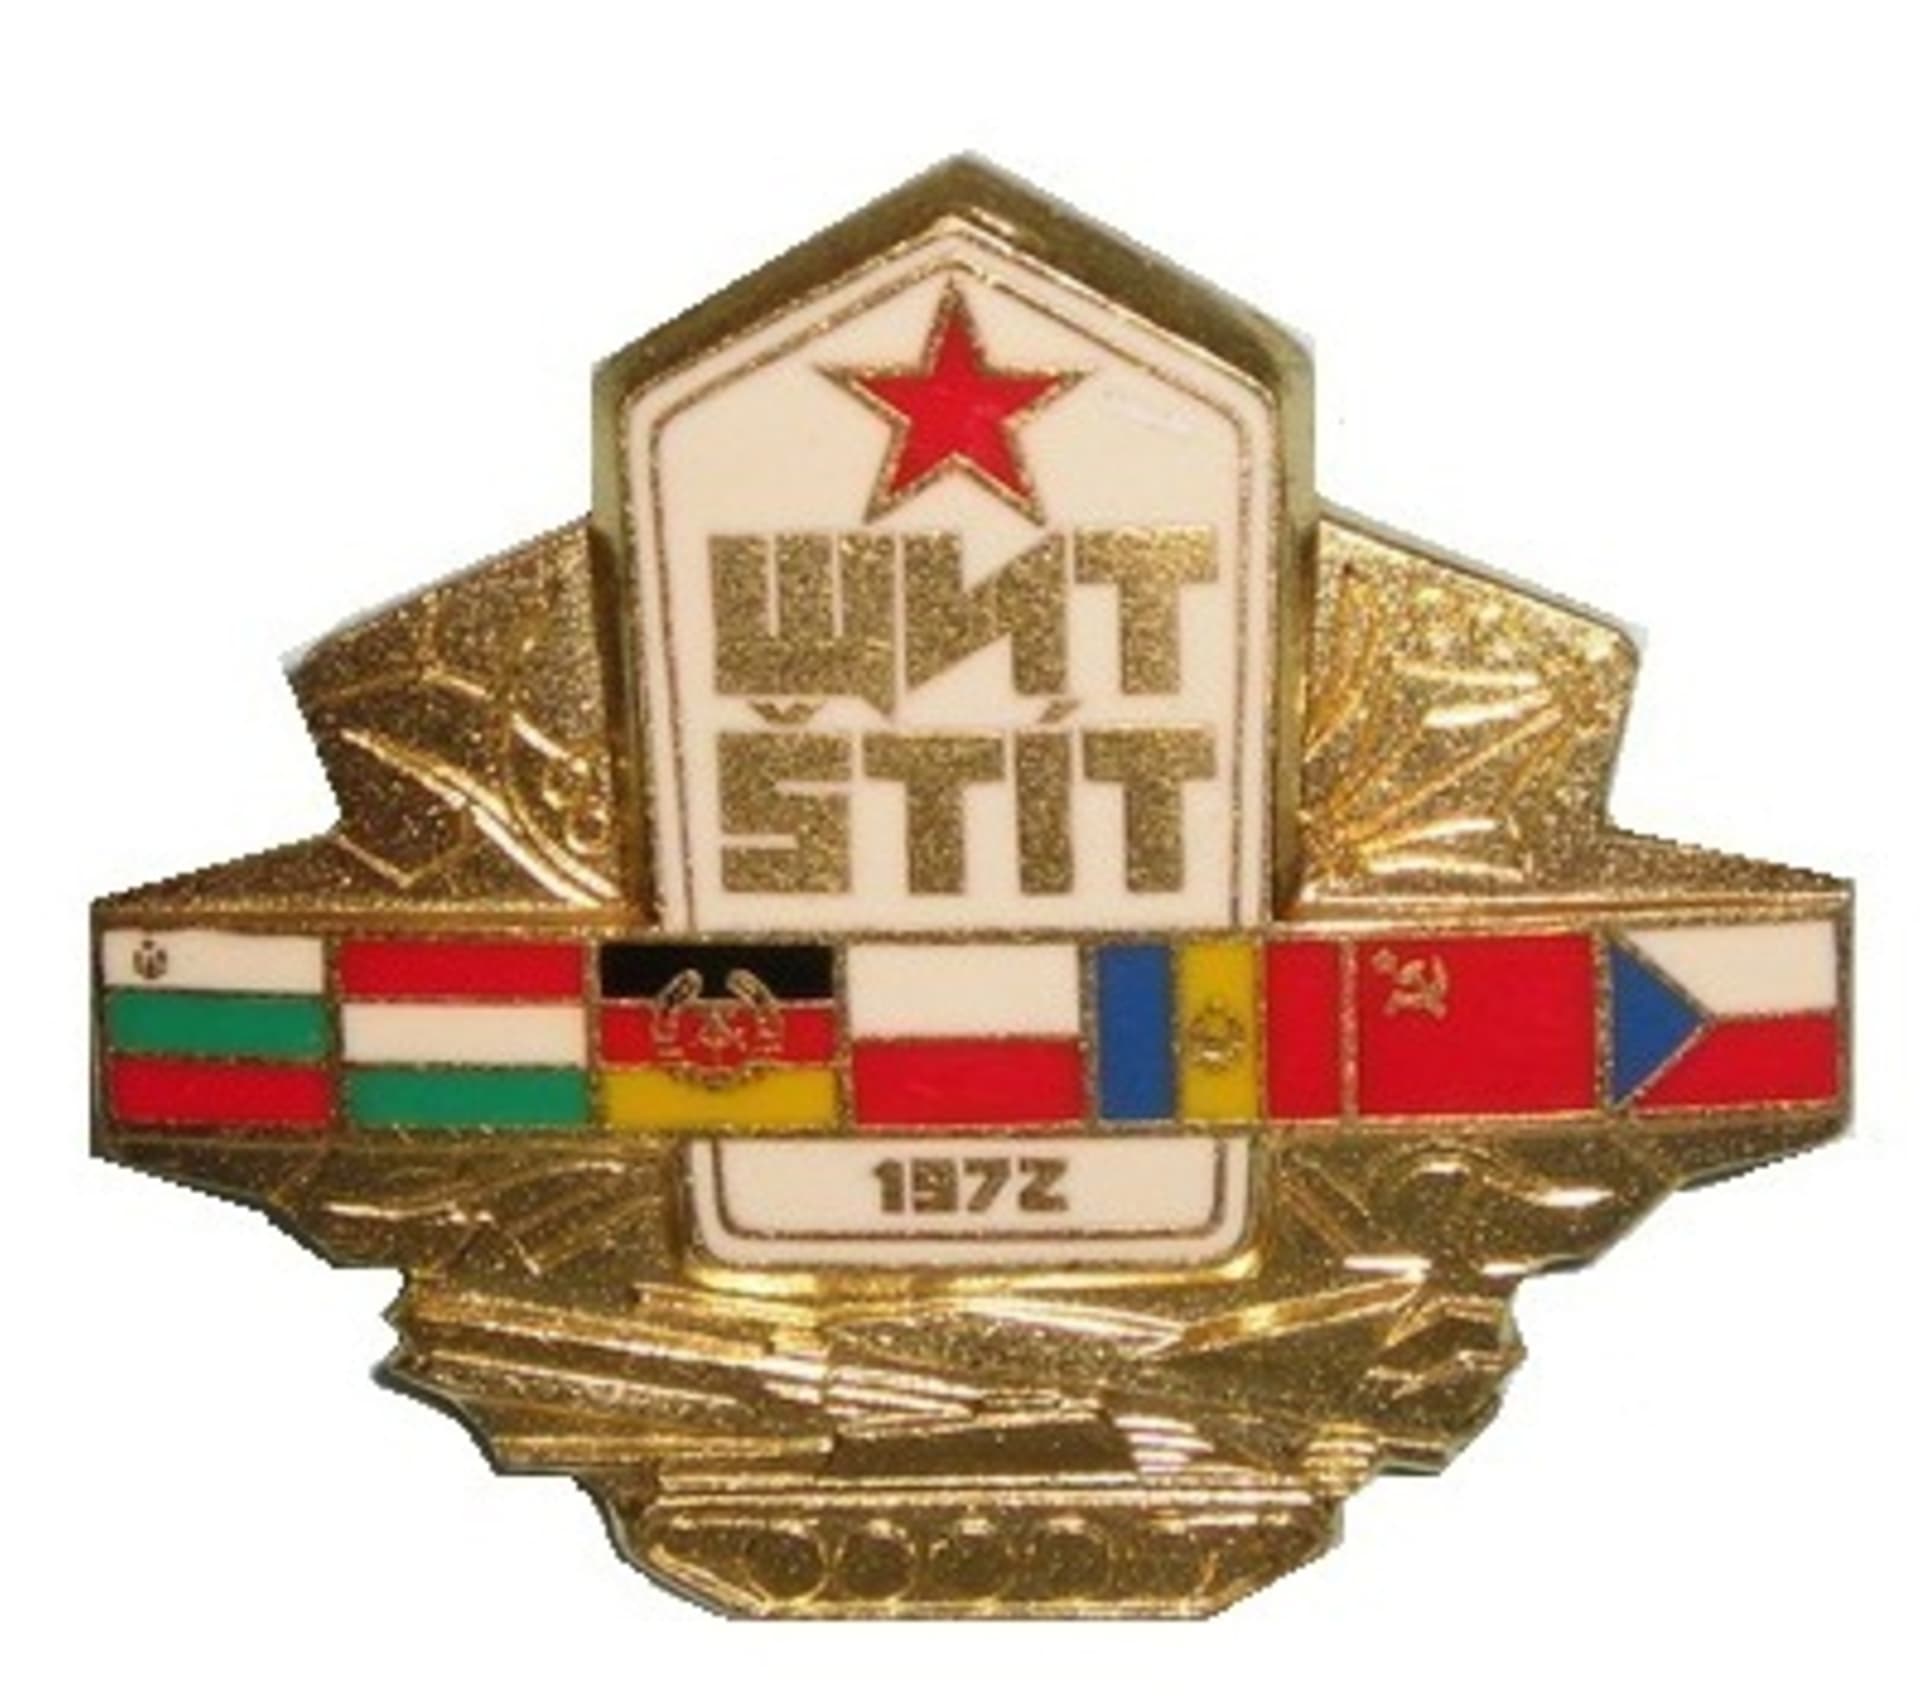 Pamětní odznak účastníků vojenských manévrů Varšavské smlouvy Štít v roce 1972 (zdroj: Informační a analytické centrum Moskva)